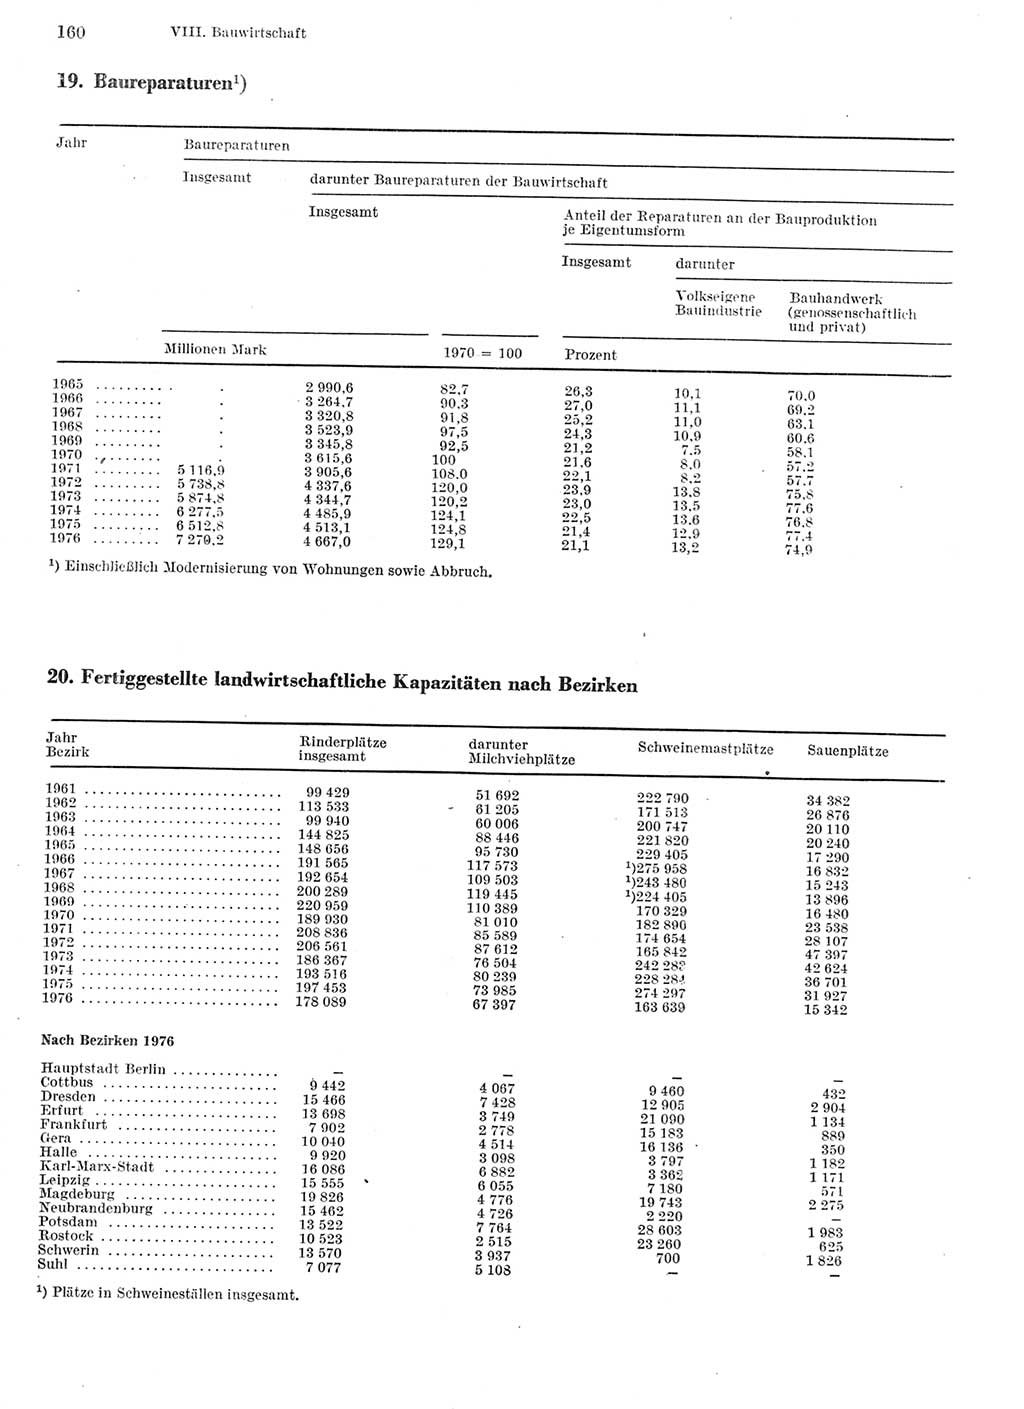 Statistisches Jahrbuch der Deutschen Demokratischen Republik (DDR) 1977, Seite 160 (Stat. Jb. DDR 1977, S. 160)